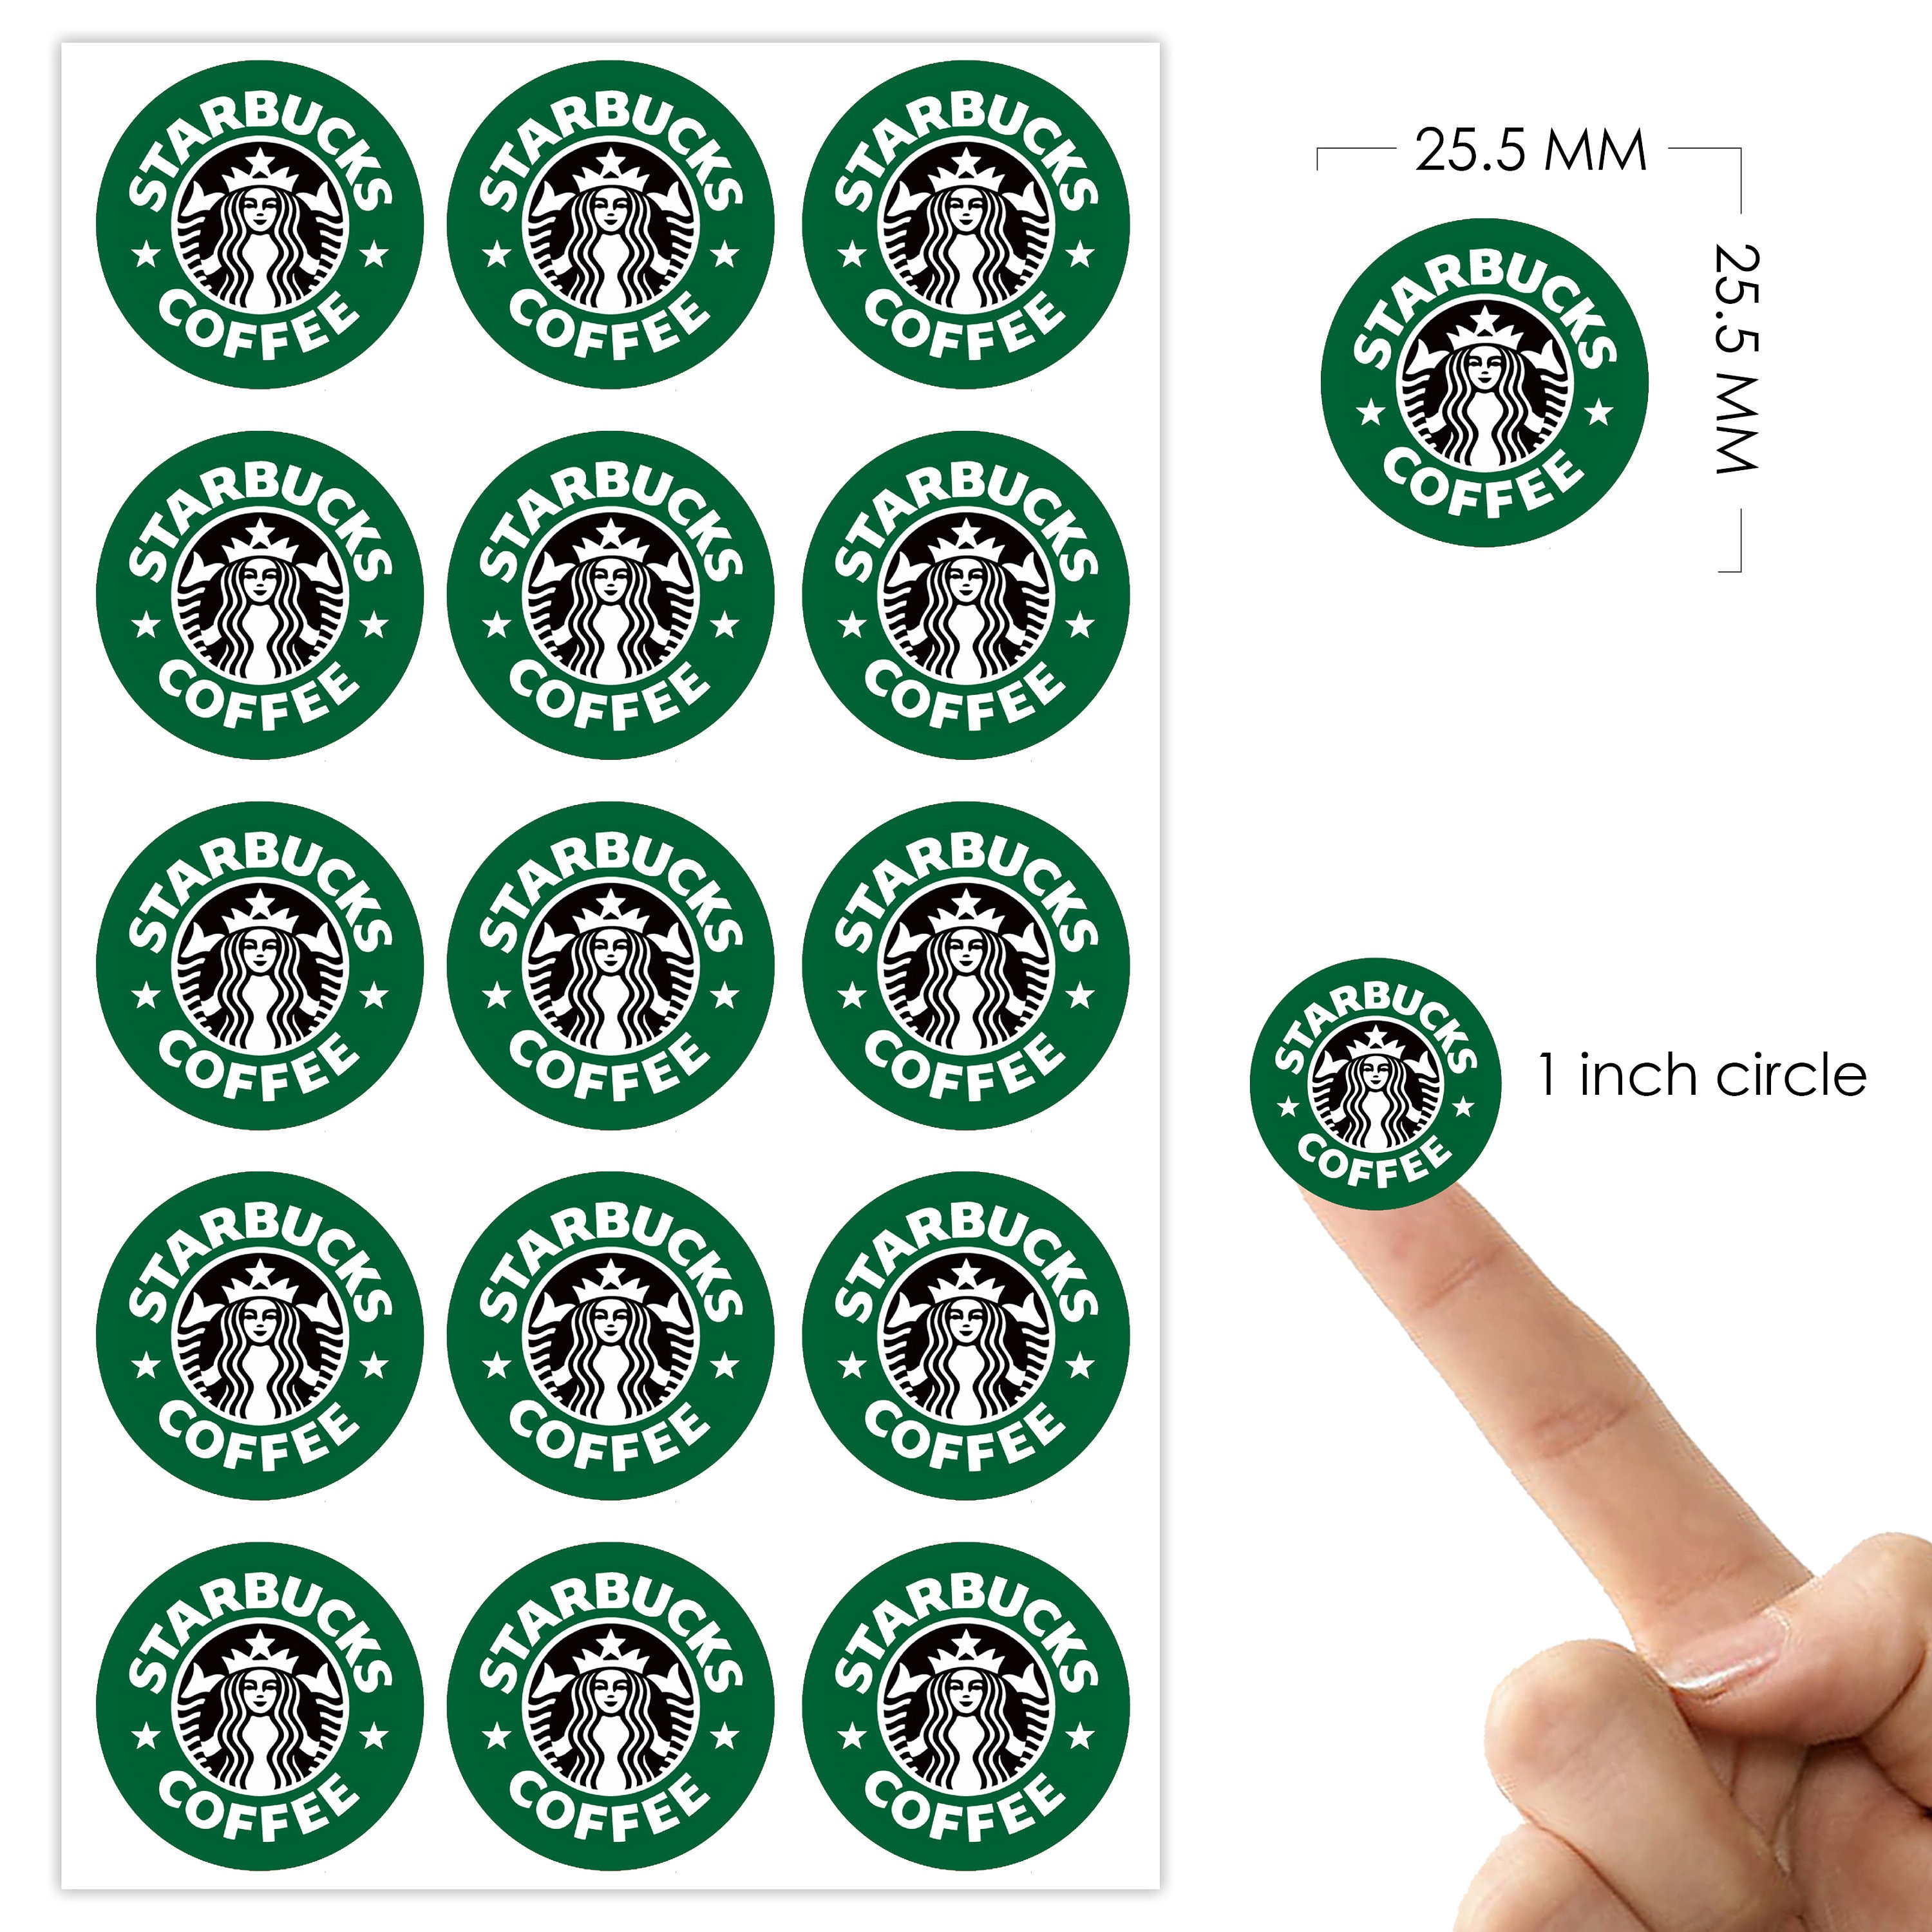 15 Starbucks reminder stickers - Planner Stickers - Reminder Stickers -  Coffee Sticker - Starbucks Bullet Journal - Logo Sticker - 1 inch